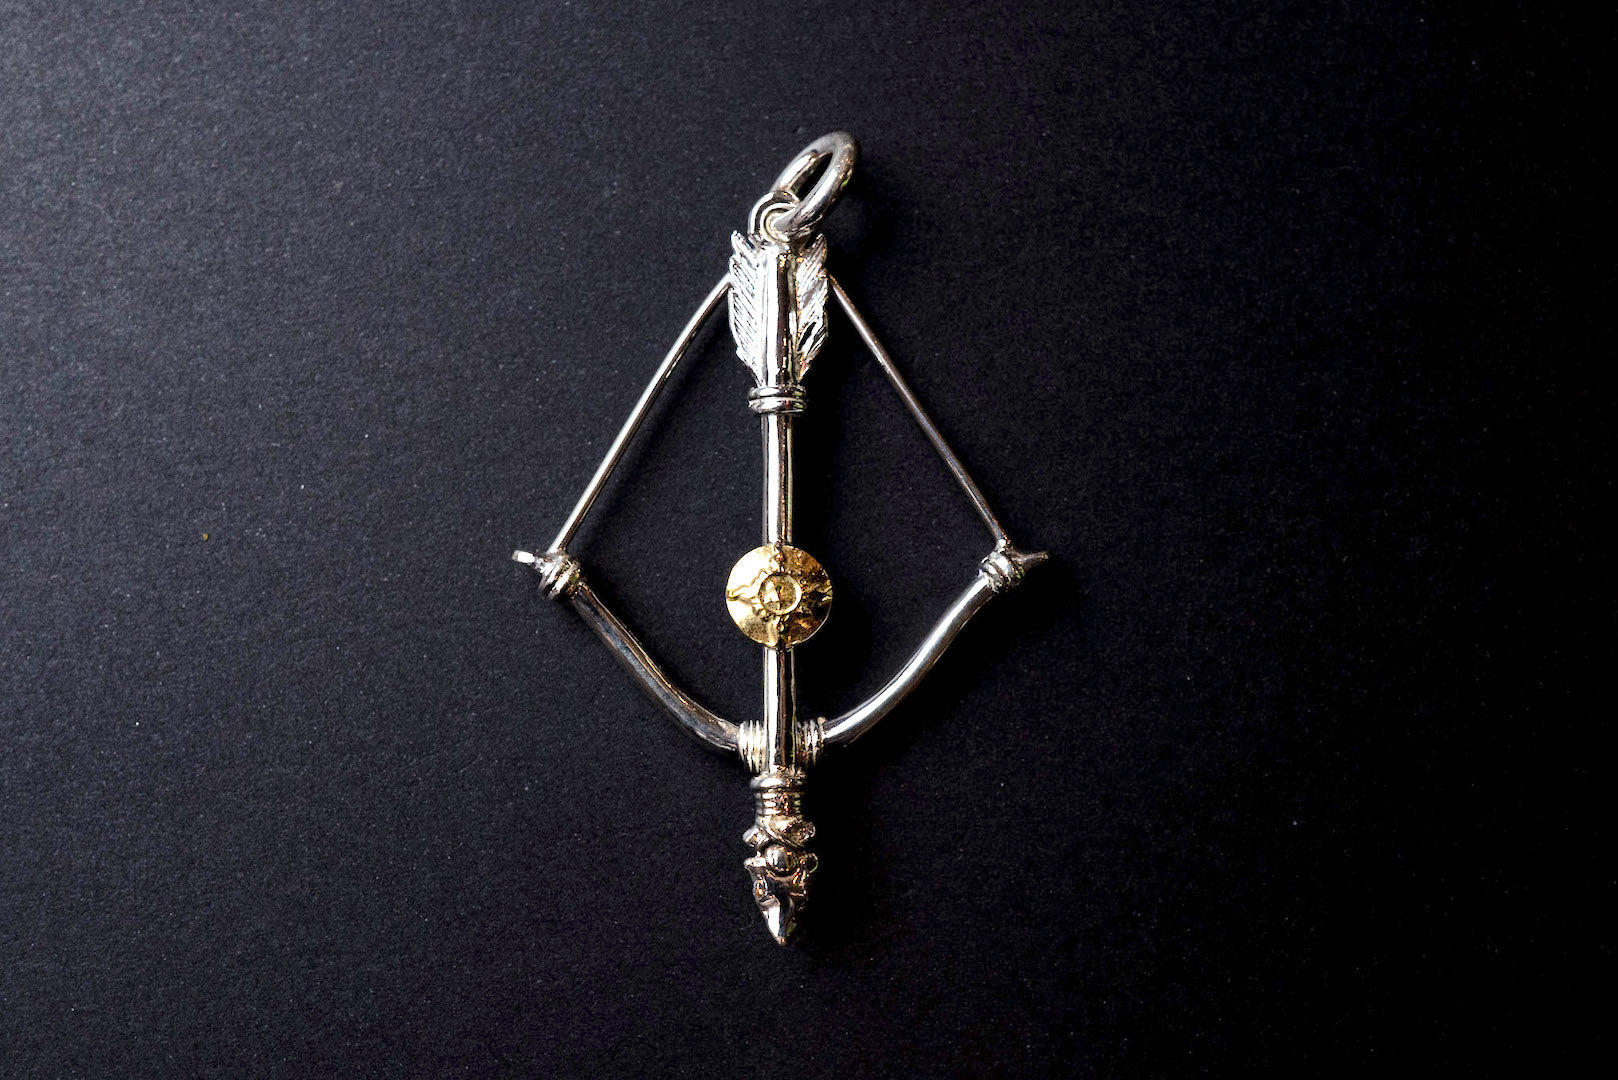 First Arrow's Size Medium "Bow & Arrow" Pendant K18 Gold Emblem (P-217)